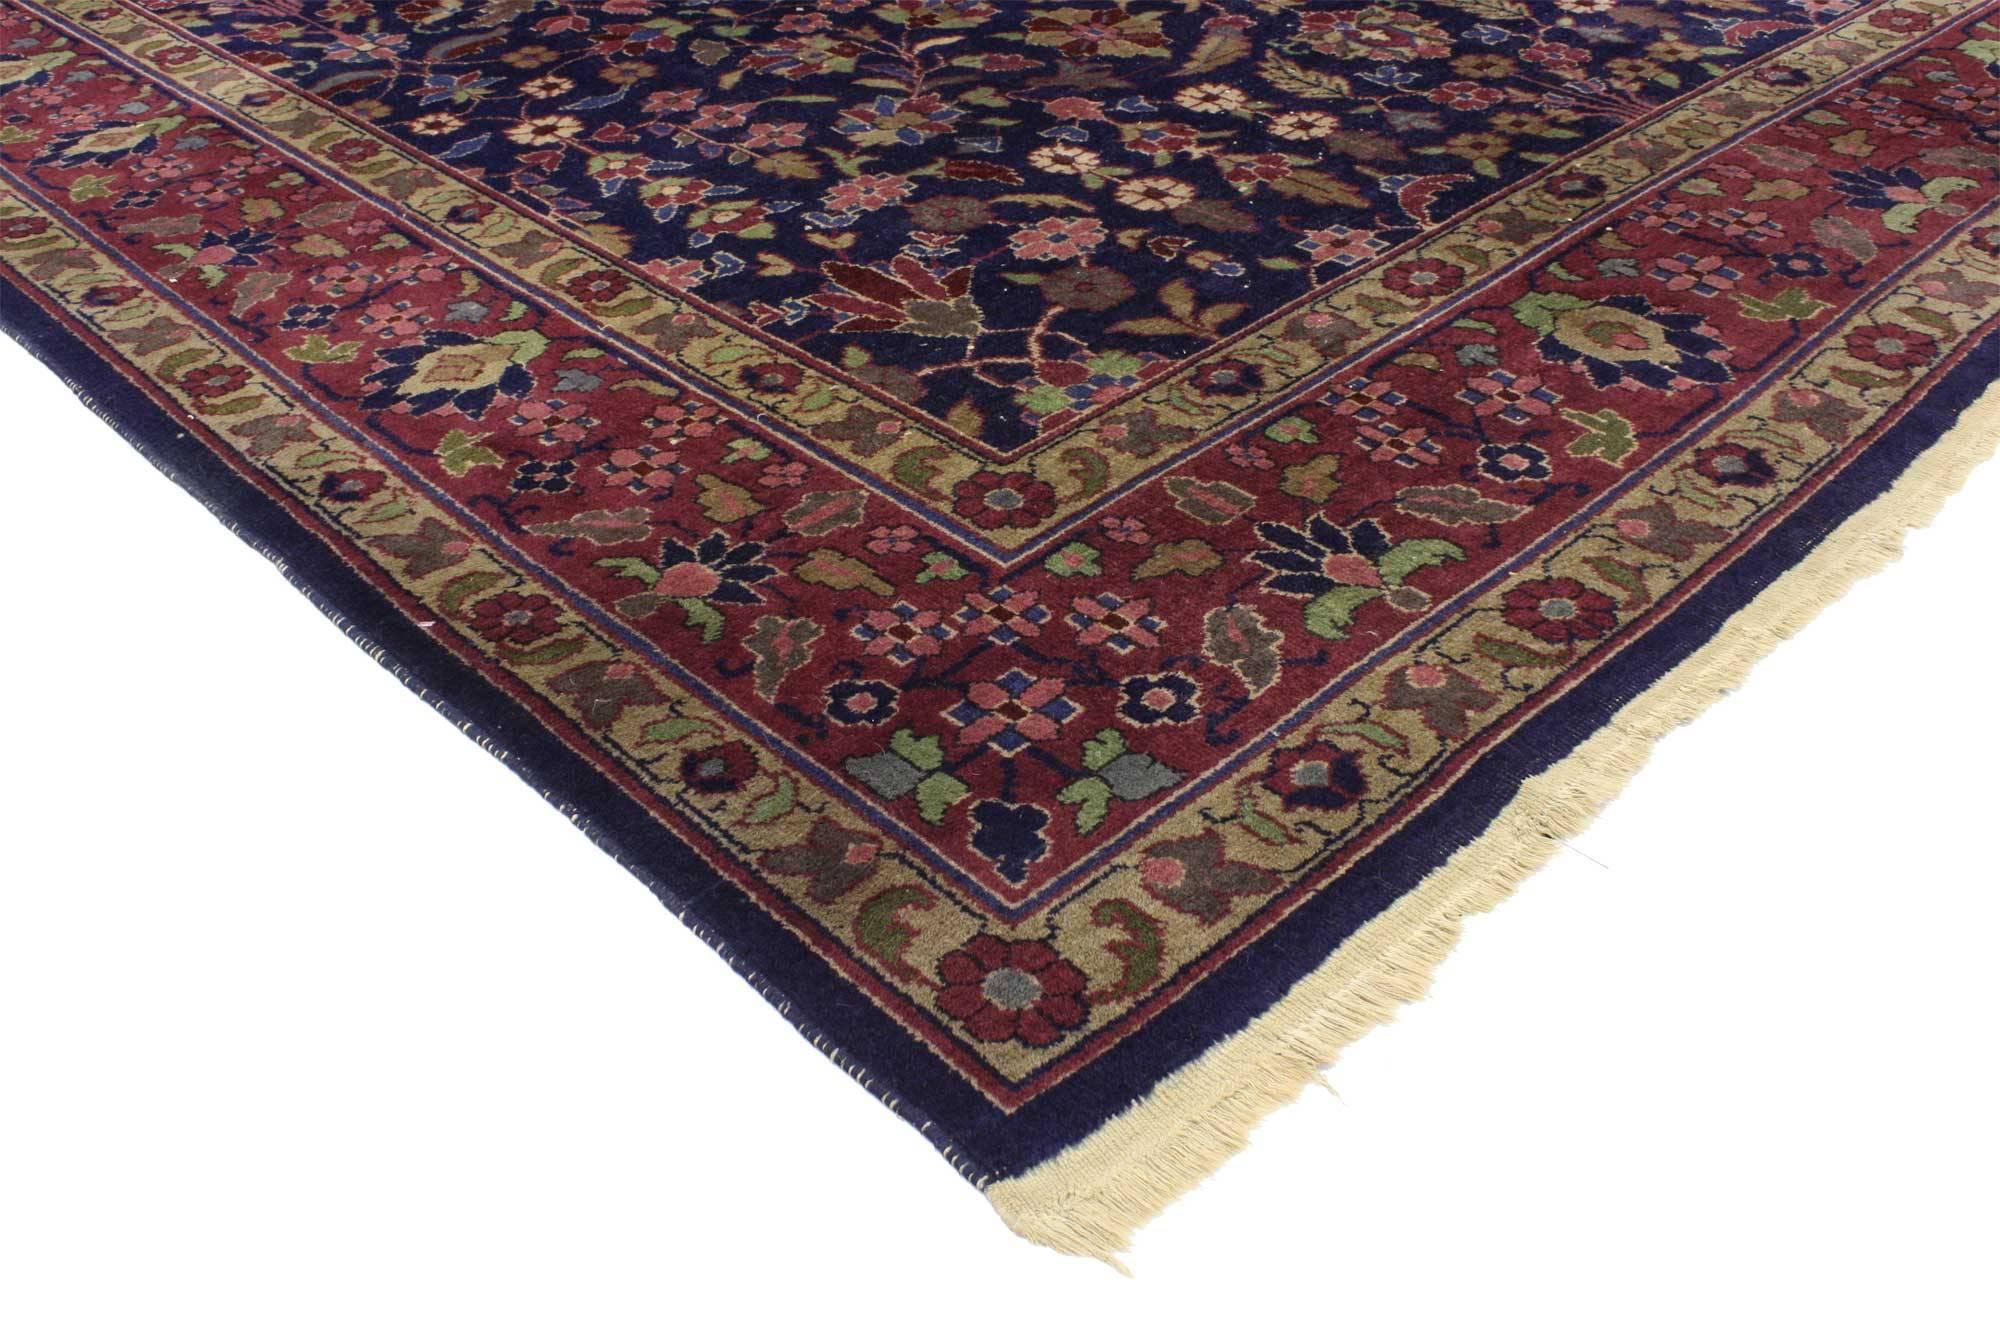 76739, tapis indien ancien de style victorien moderne. Riche en couleurs, en texture et en ambiance séduisante, ce tapis indien ancien présente un somptueux motif floral composé de rosettes, de lys, de palmettes, de cyprès, de fleurs étoilées, de